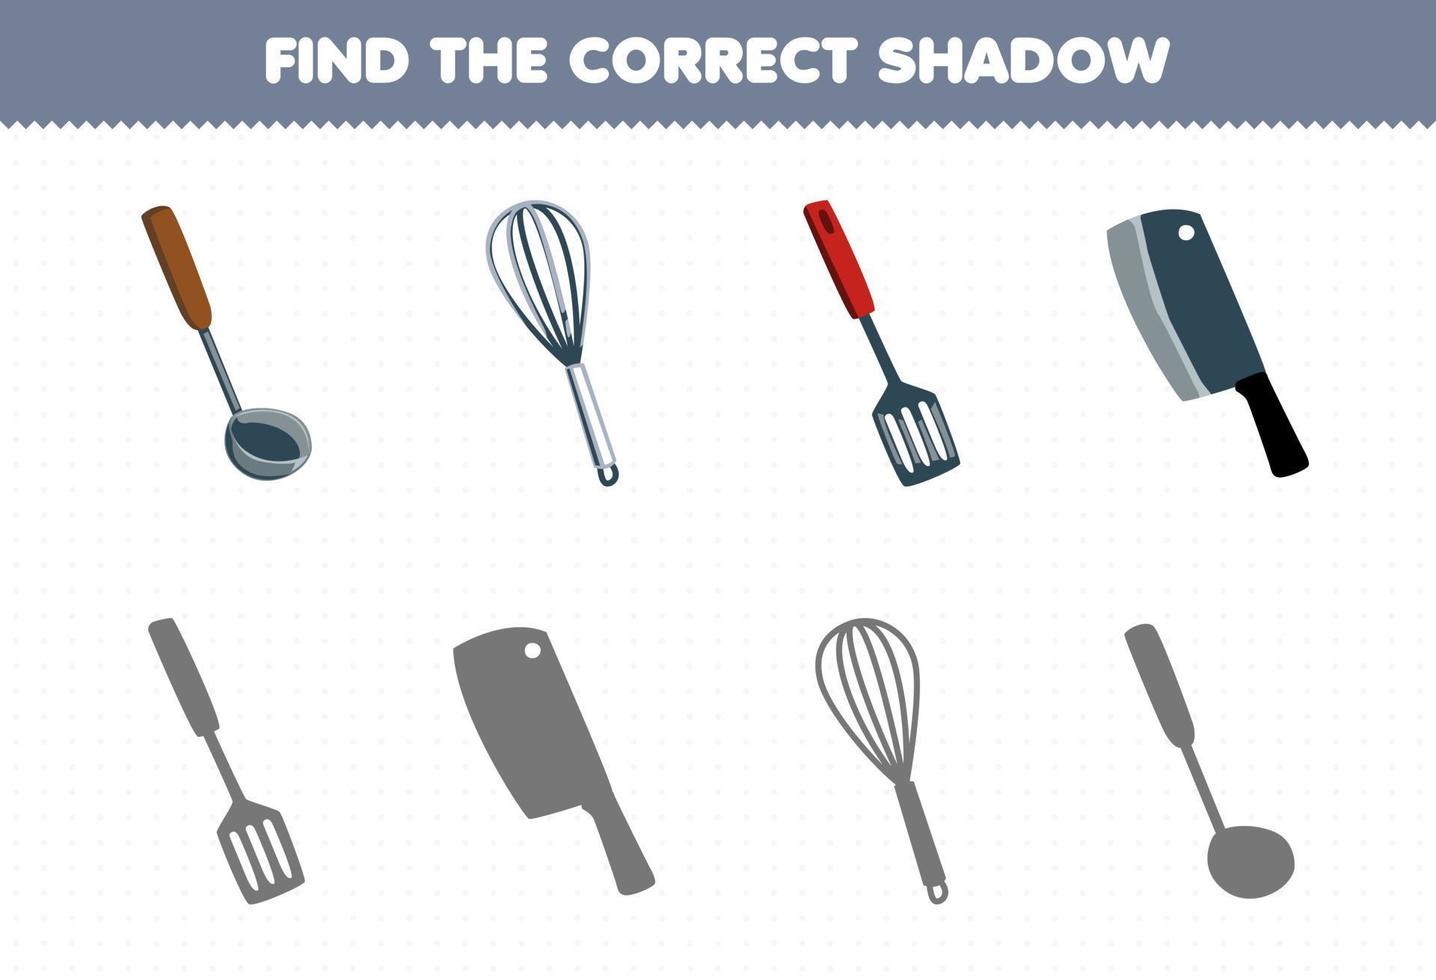 juego educativo para niños encontrar la sombra correcta conjunto de dibujos animados lindo cucharón batidor espátula cuchillo herramienta imprimible hoja de trabajo vector